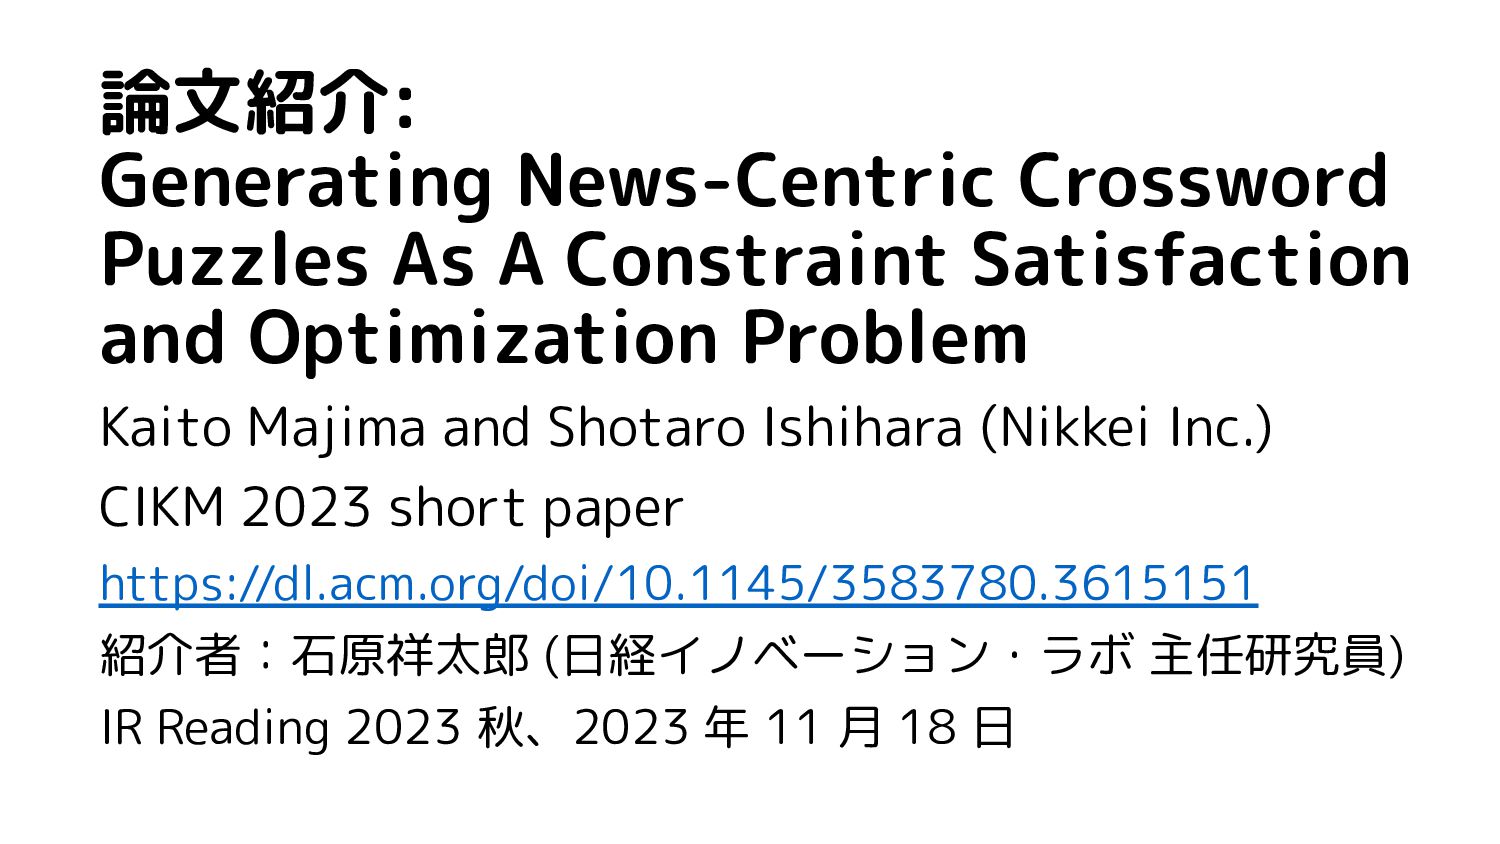 論文紹介: Generating News-Centric Crossword Puzzles As A Constraint Satisfaction and Optimization Problem